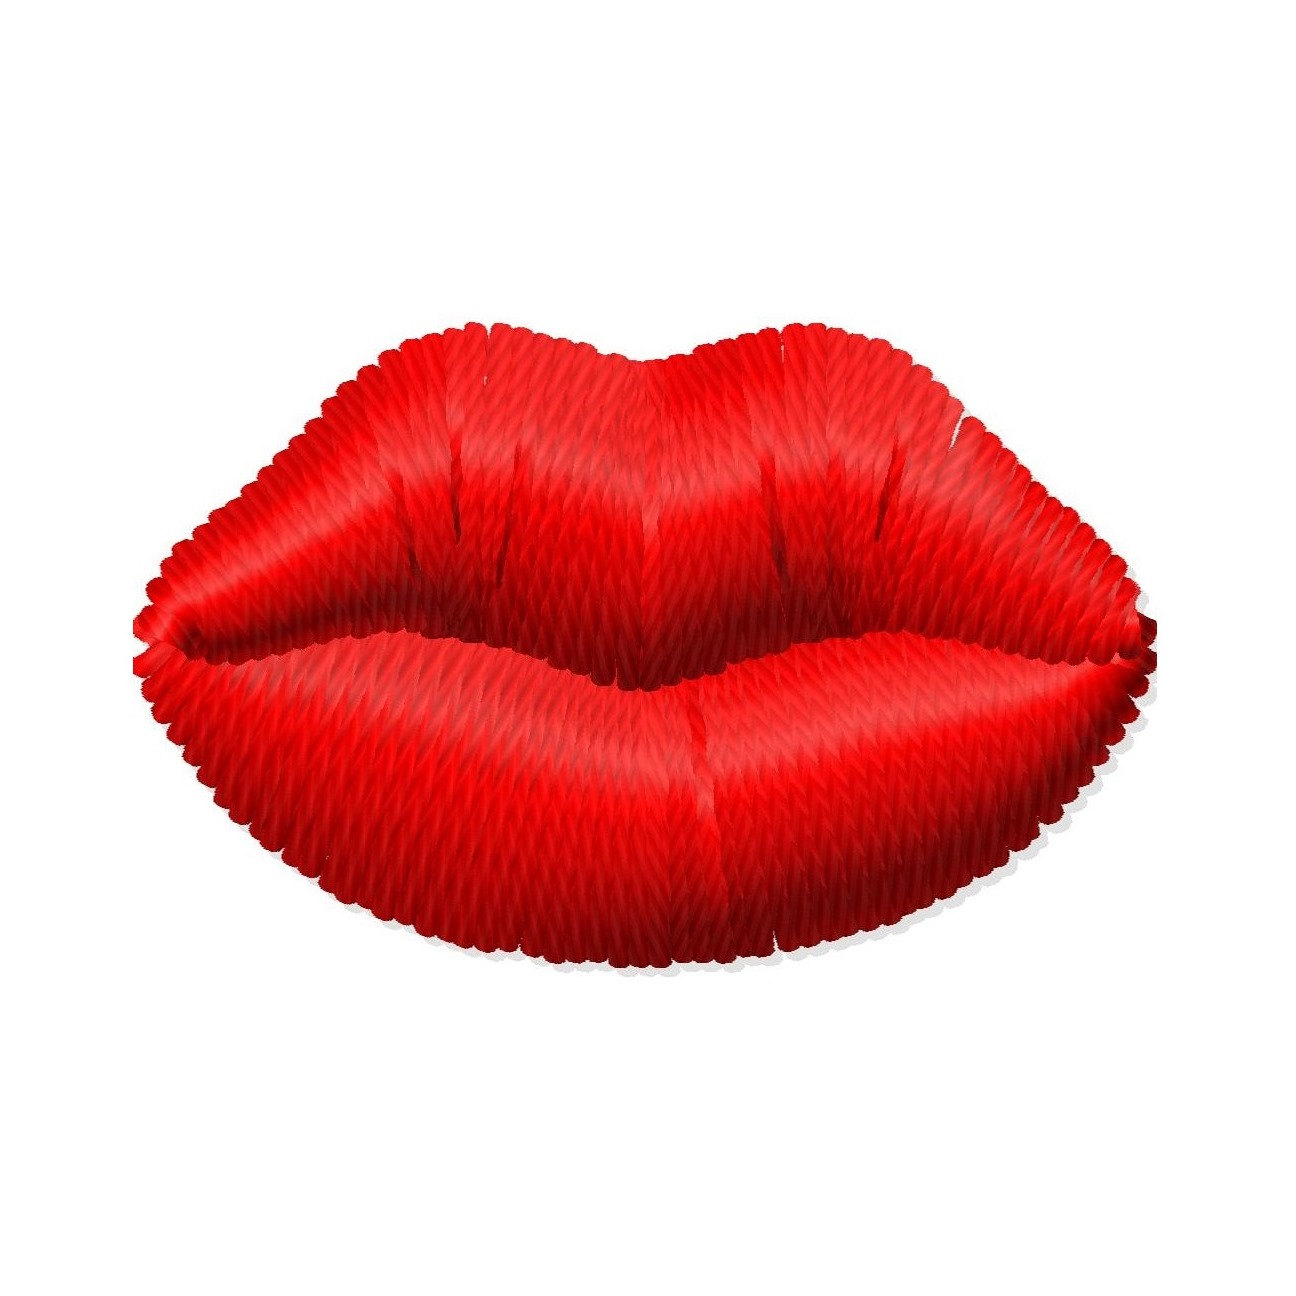 Cartoon kissy lips